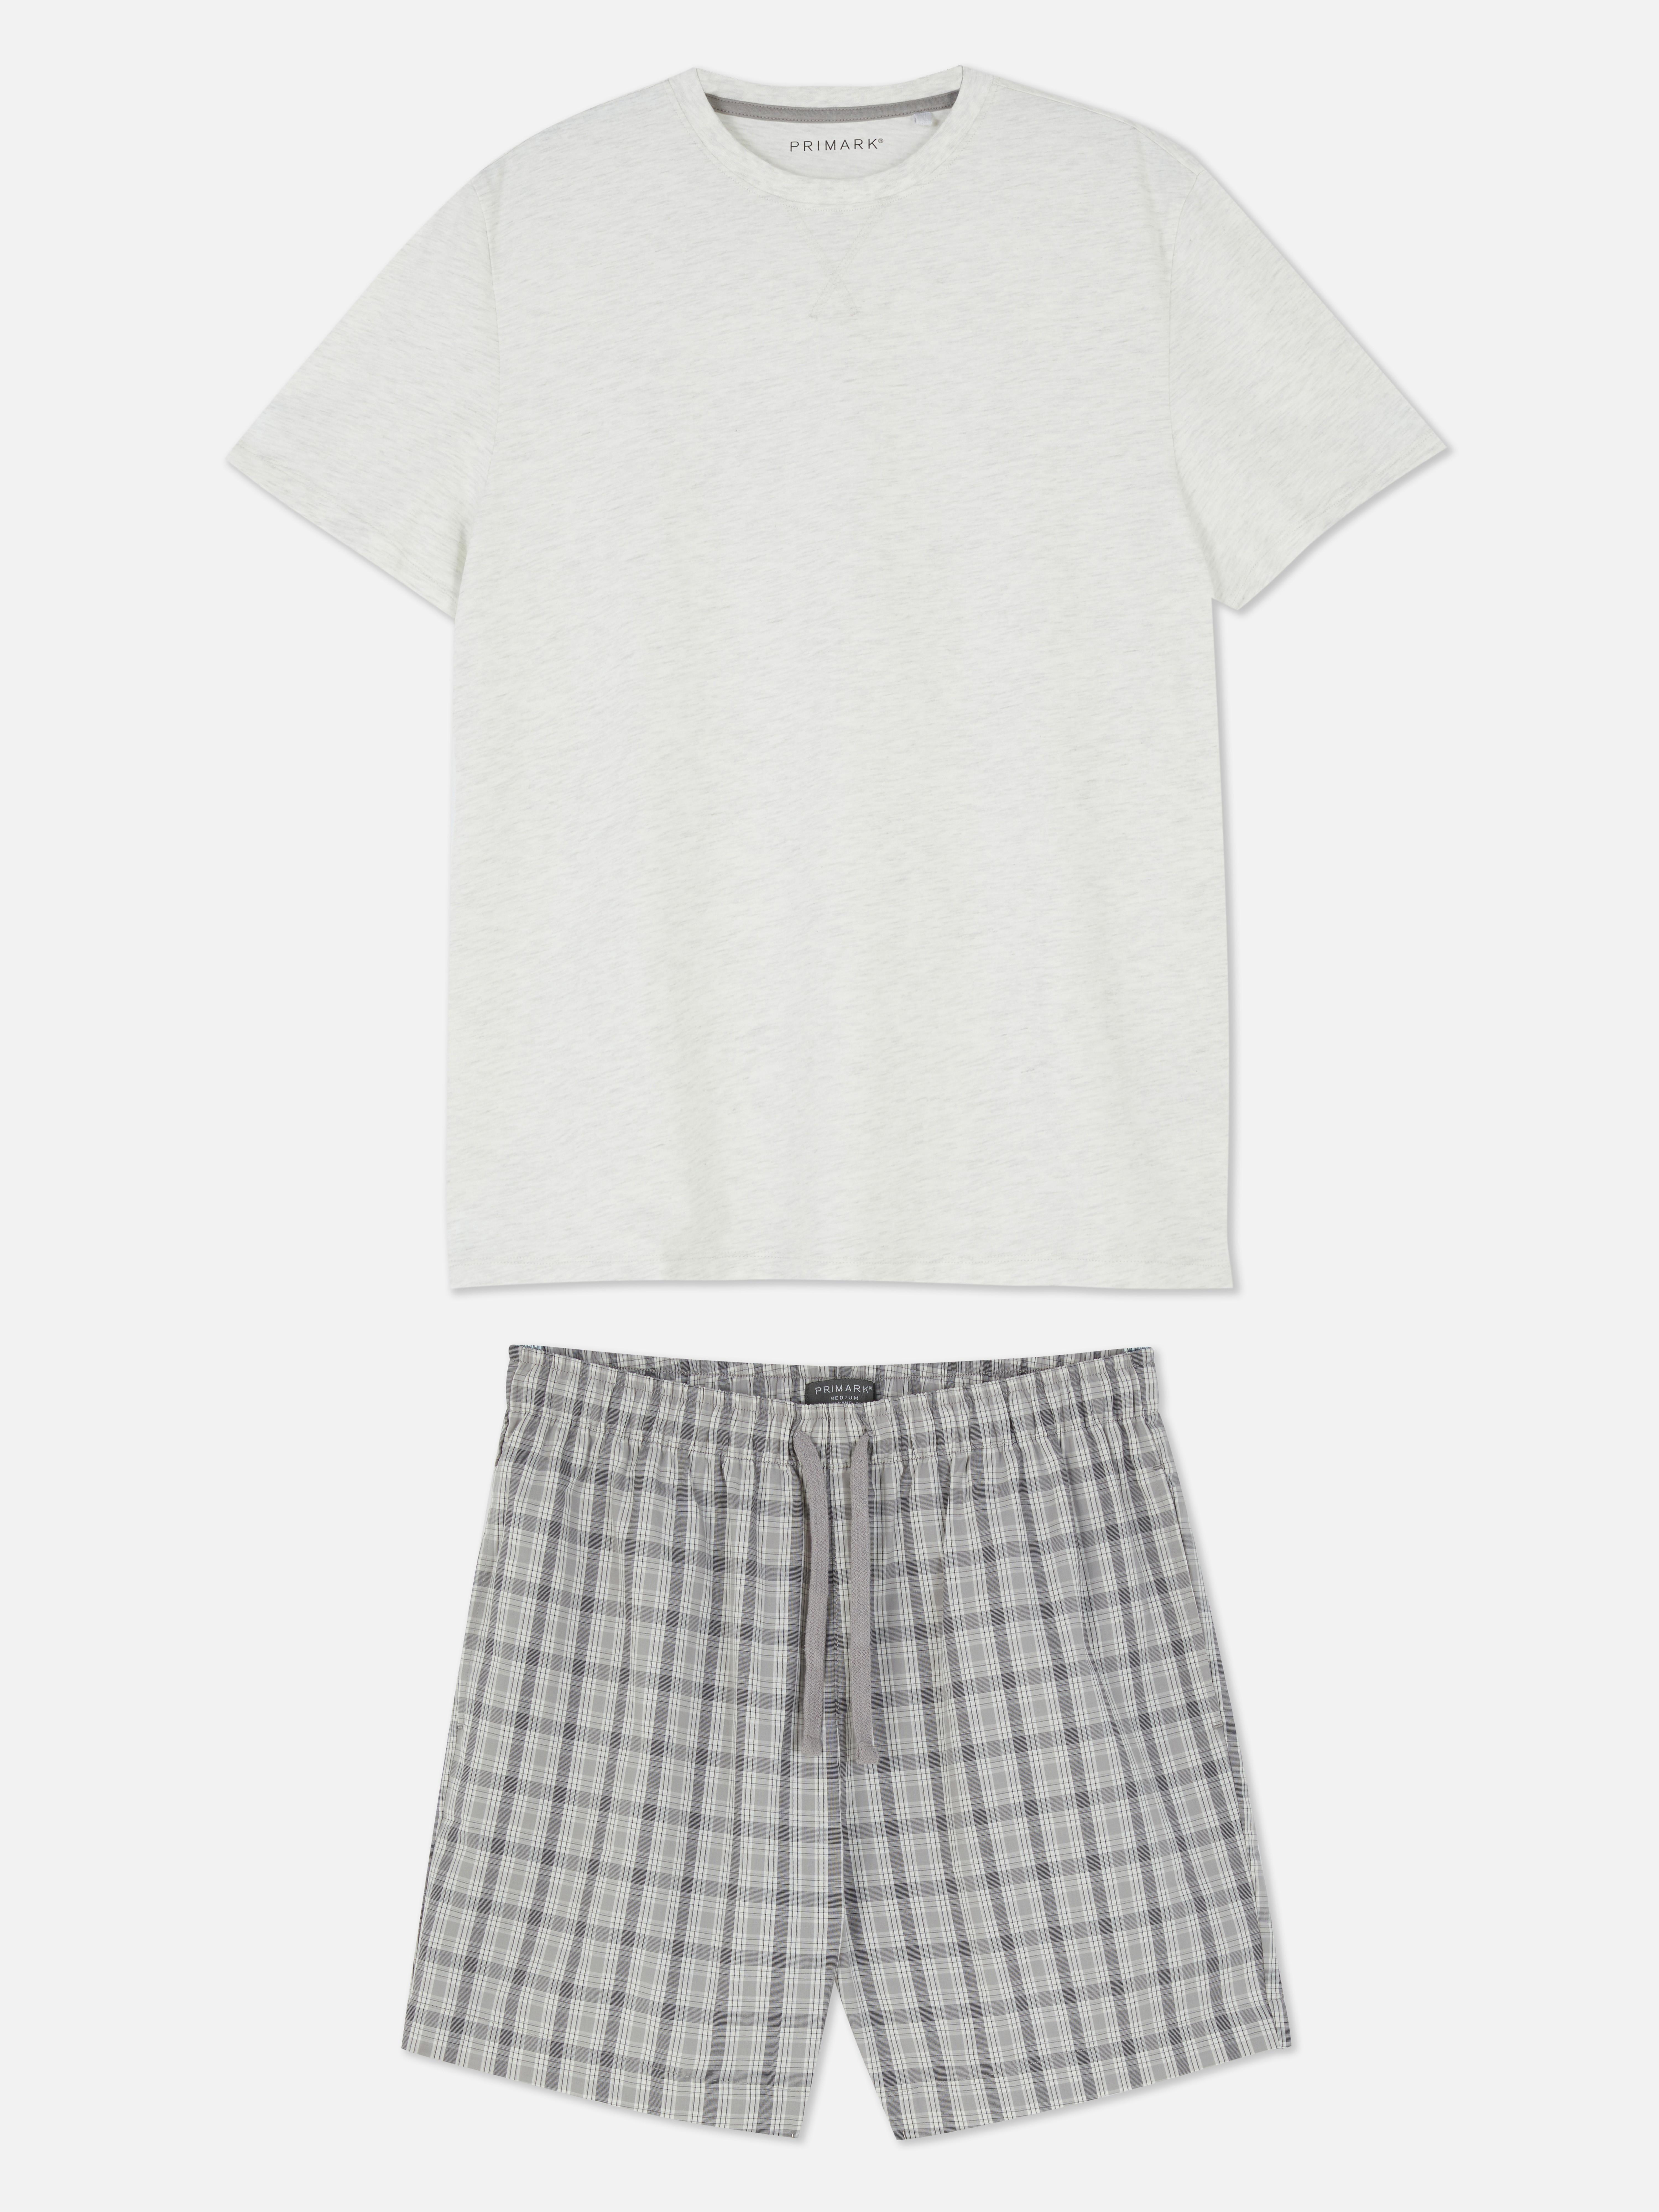 T-shirt and Checked Shorts Pyjamas